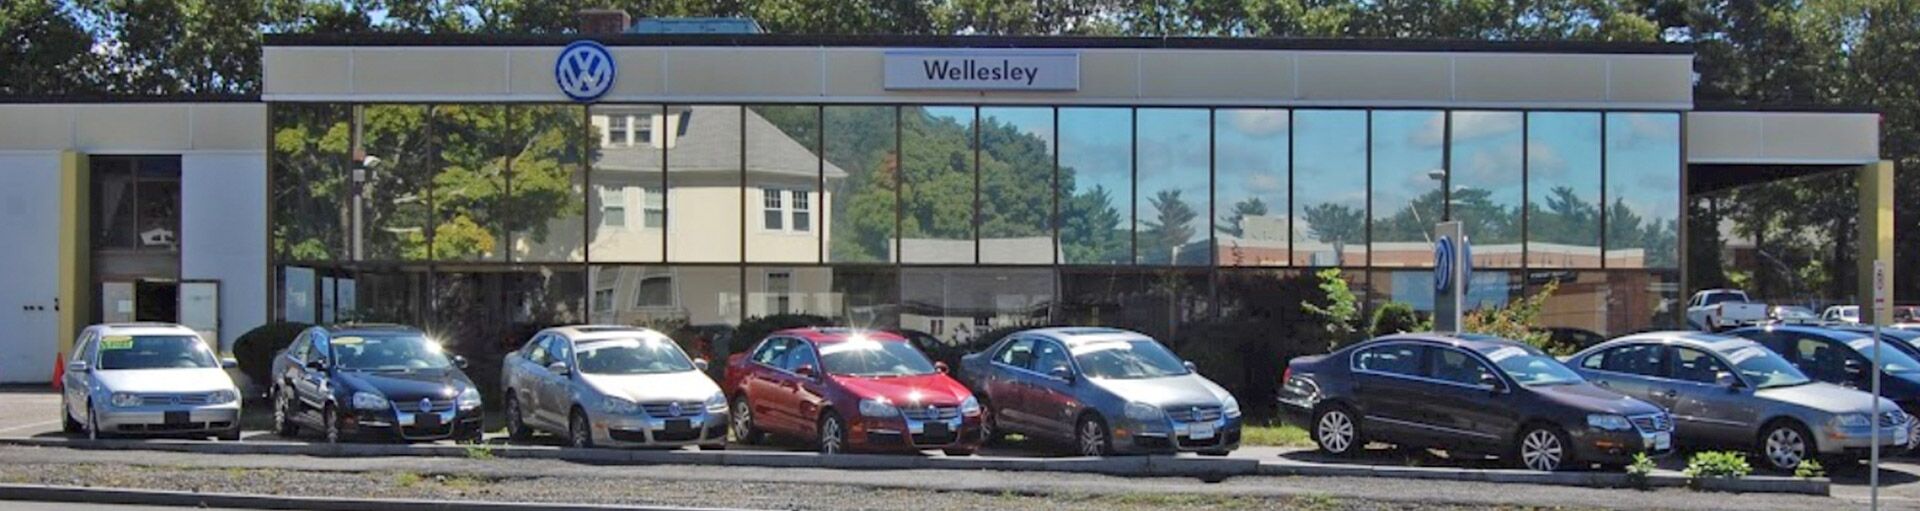 Wellesley Volkswagen Battery Check